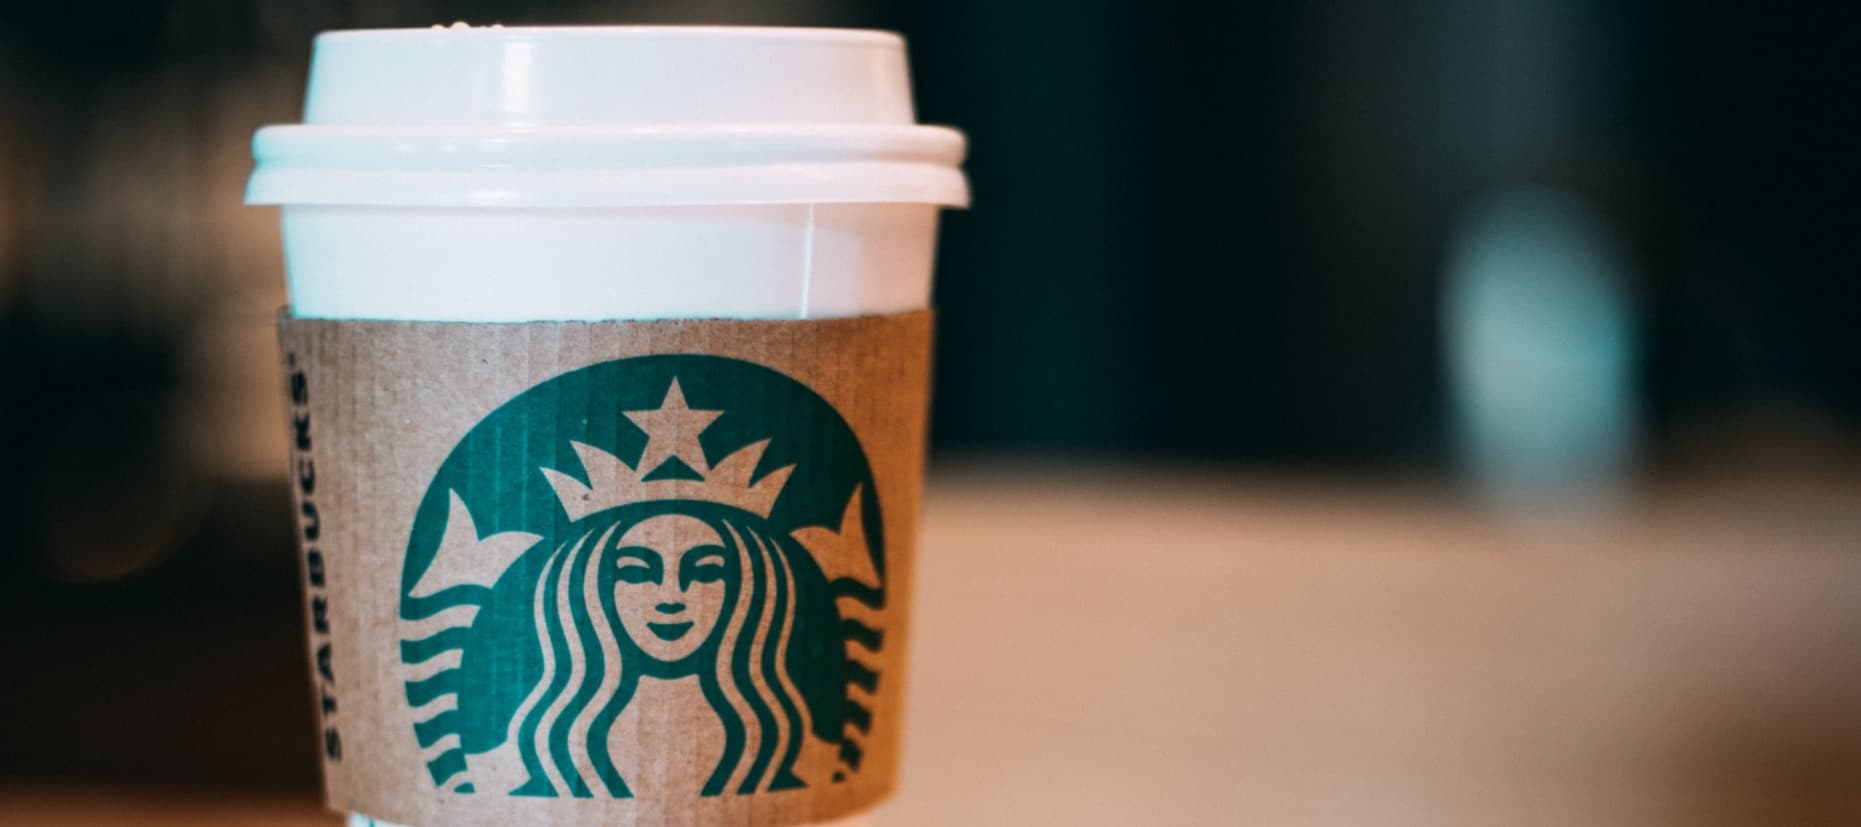 Фото новости: "Starbucks подала патент на кофемашину для кастомизированных напитков"